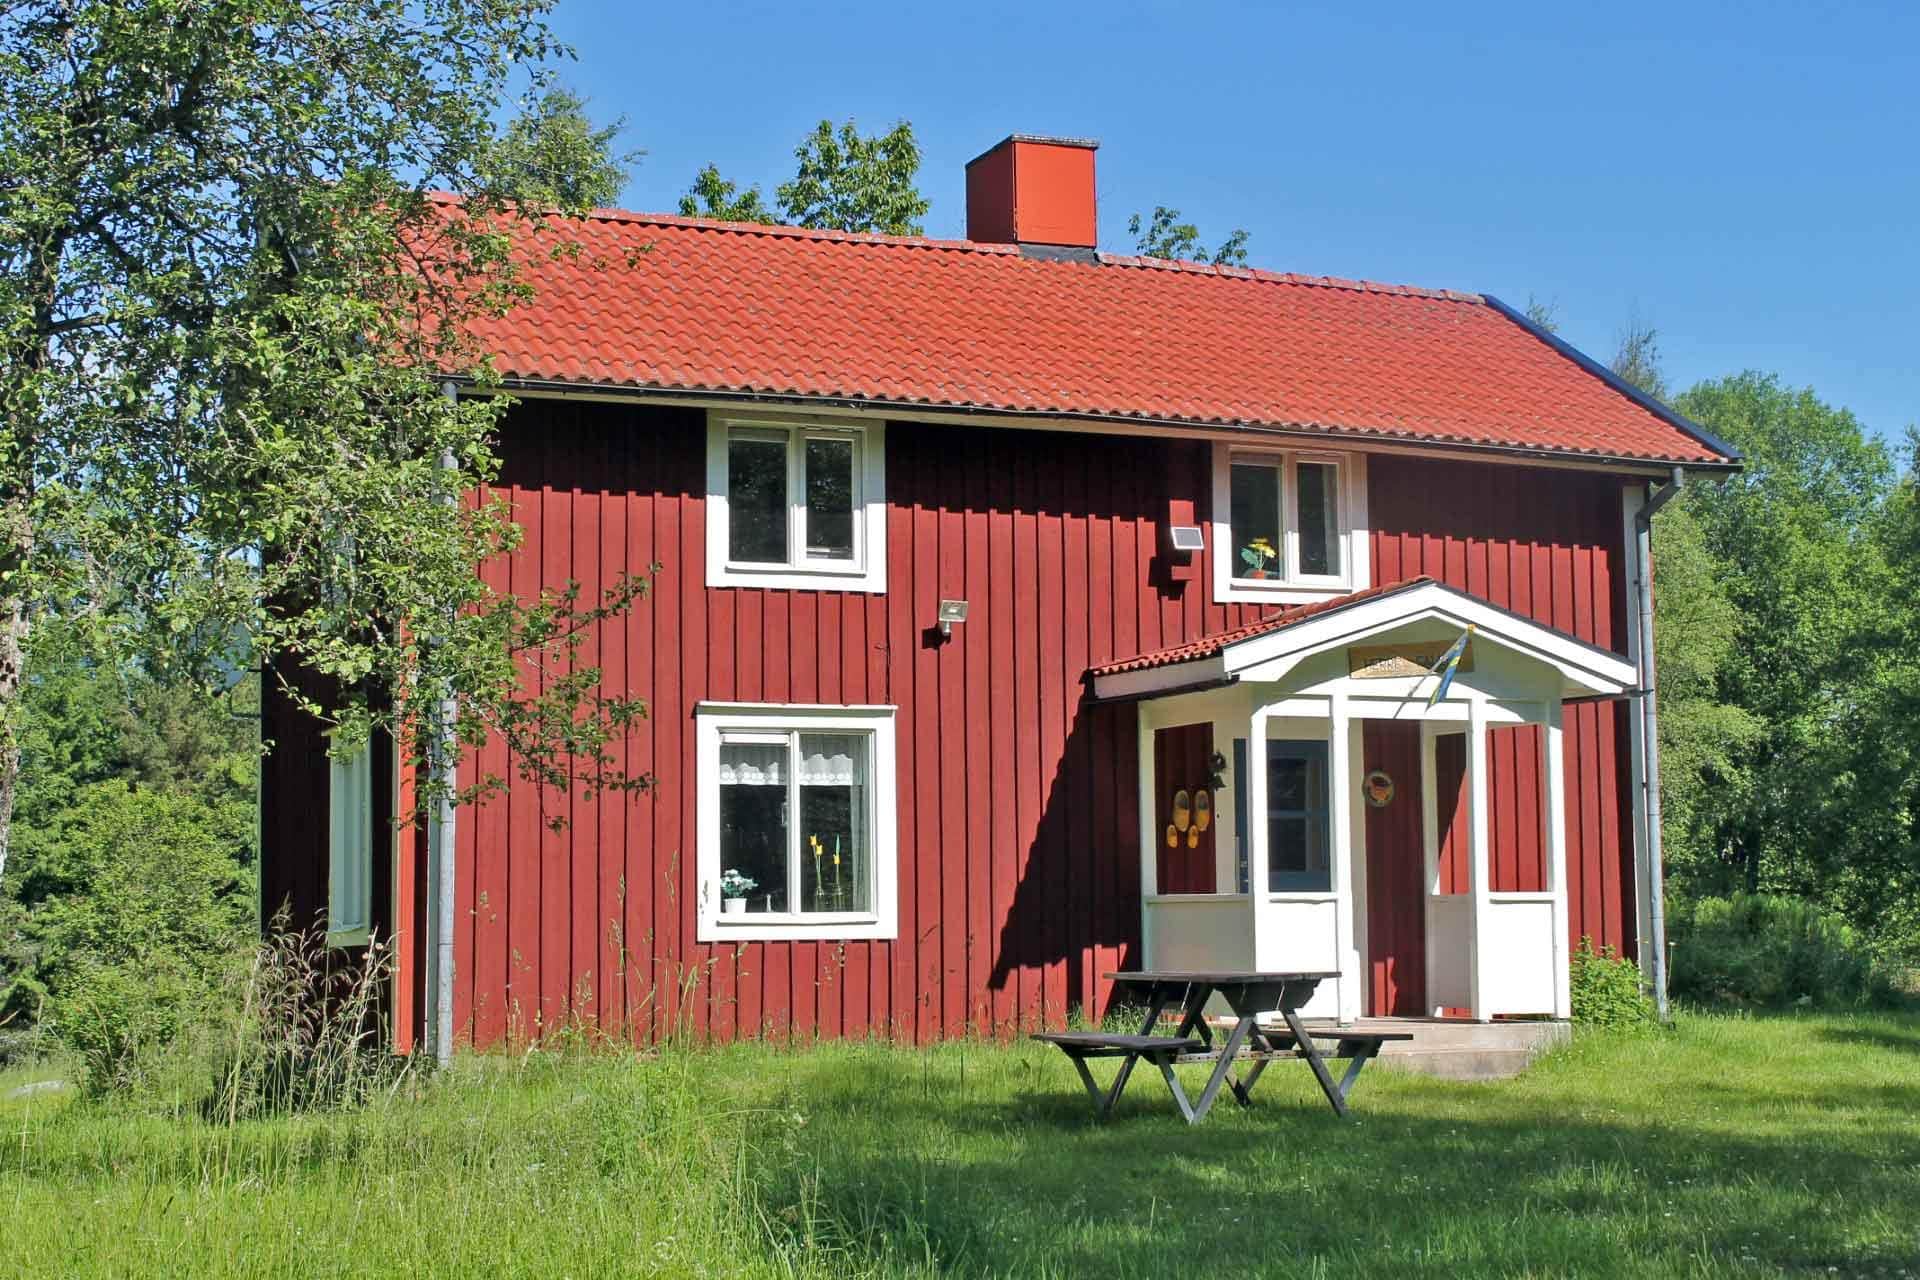 Image 0-171 Holiday-home KRO468, Sävsjö Herrafällan 0, DK - 36047 Sävsjöström